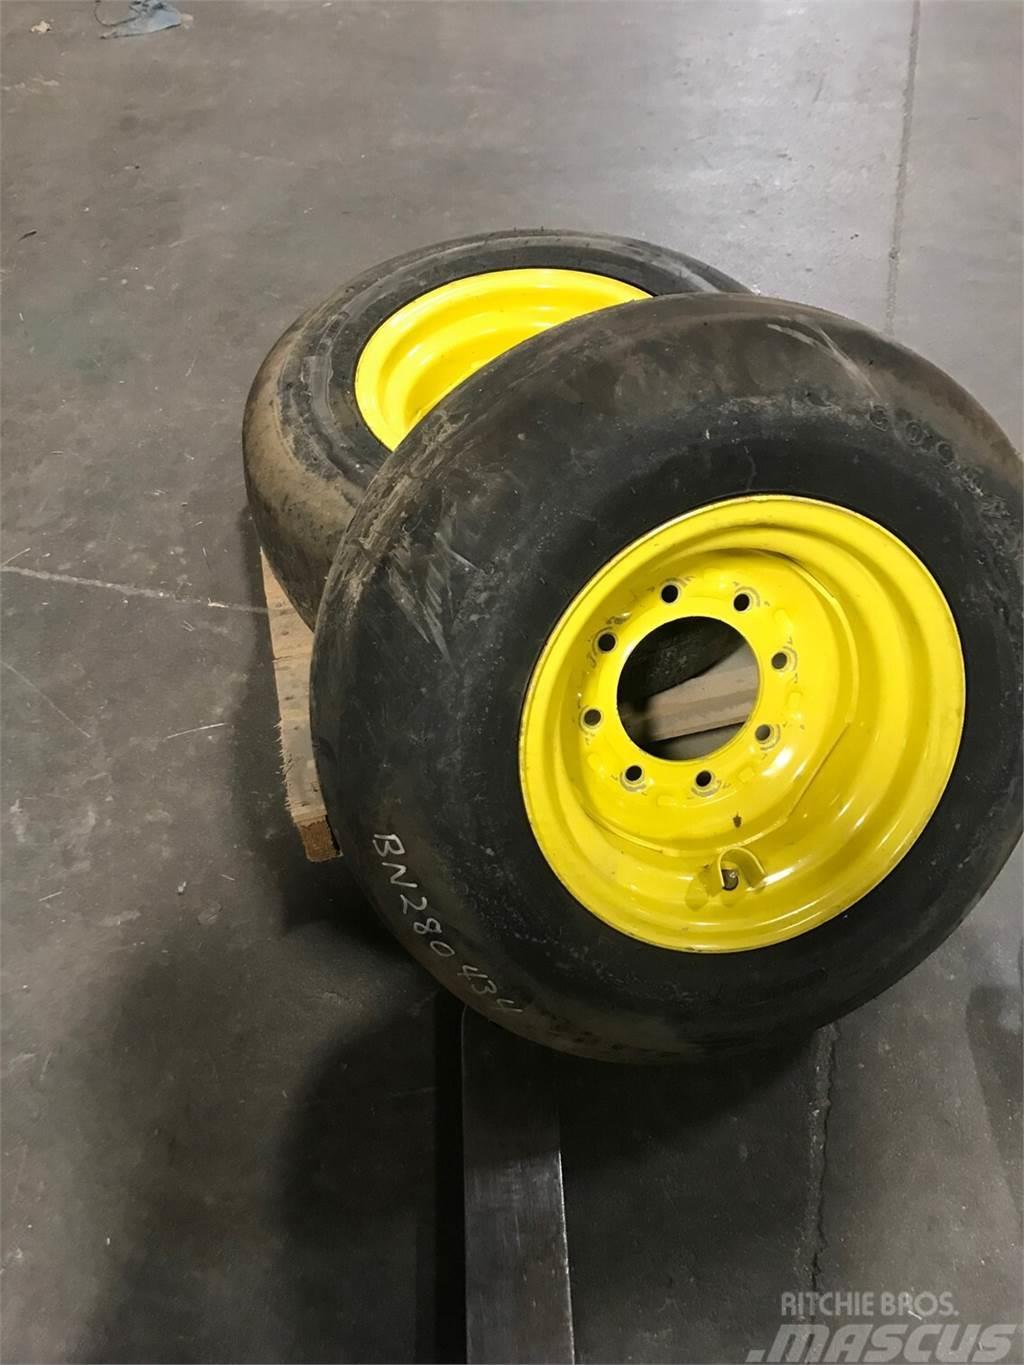 John Deere BN280434 Tire & Wheel ass'm Overige zaaimachines